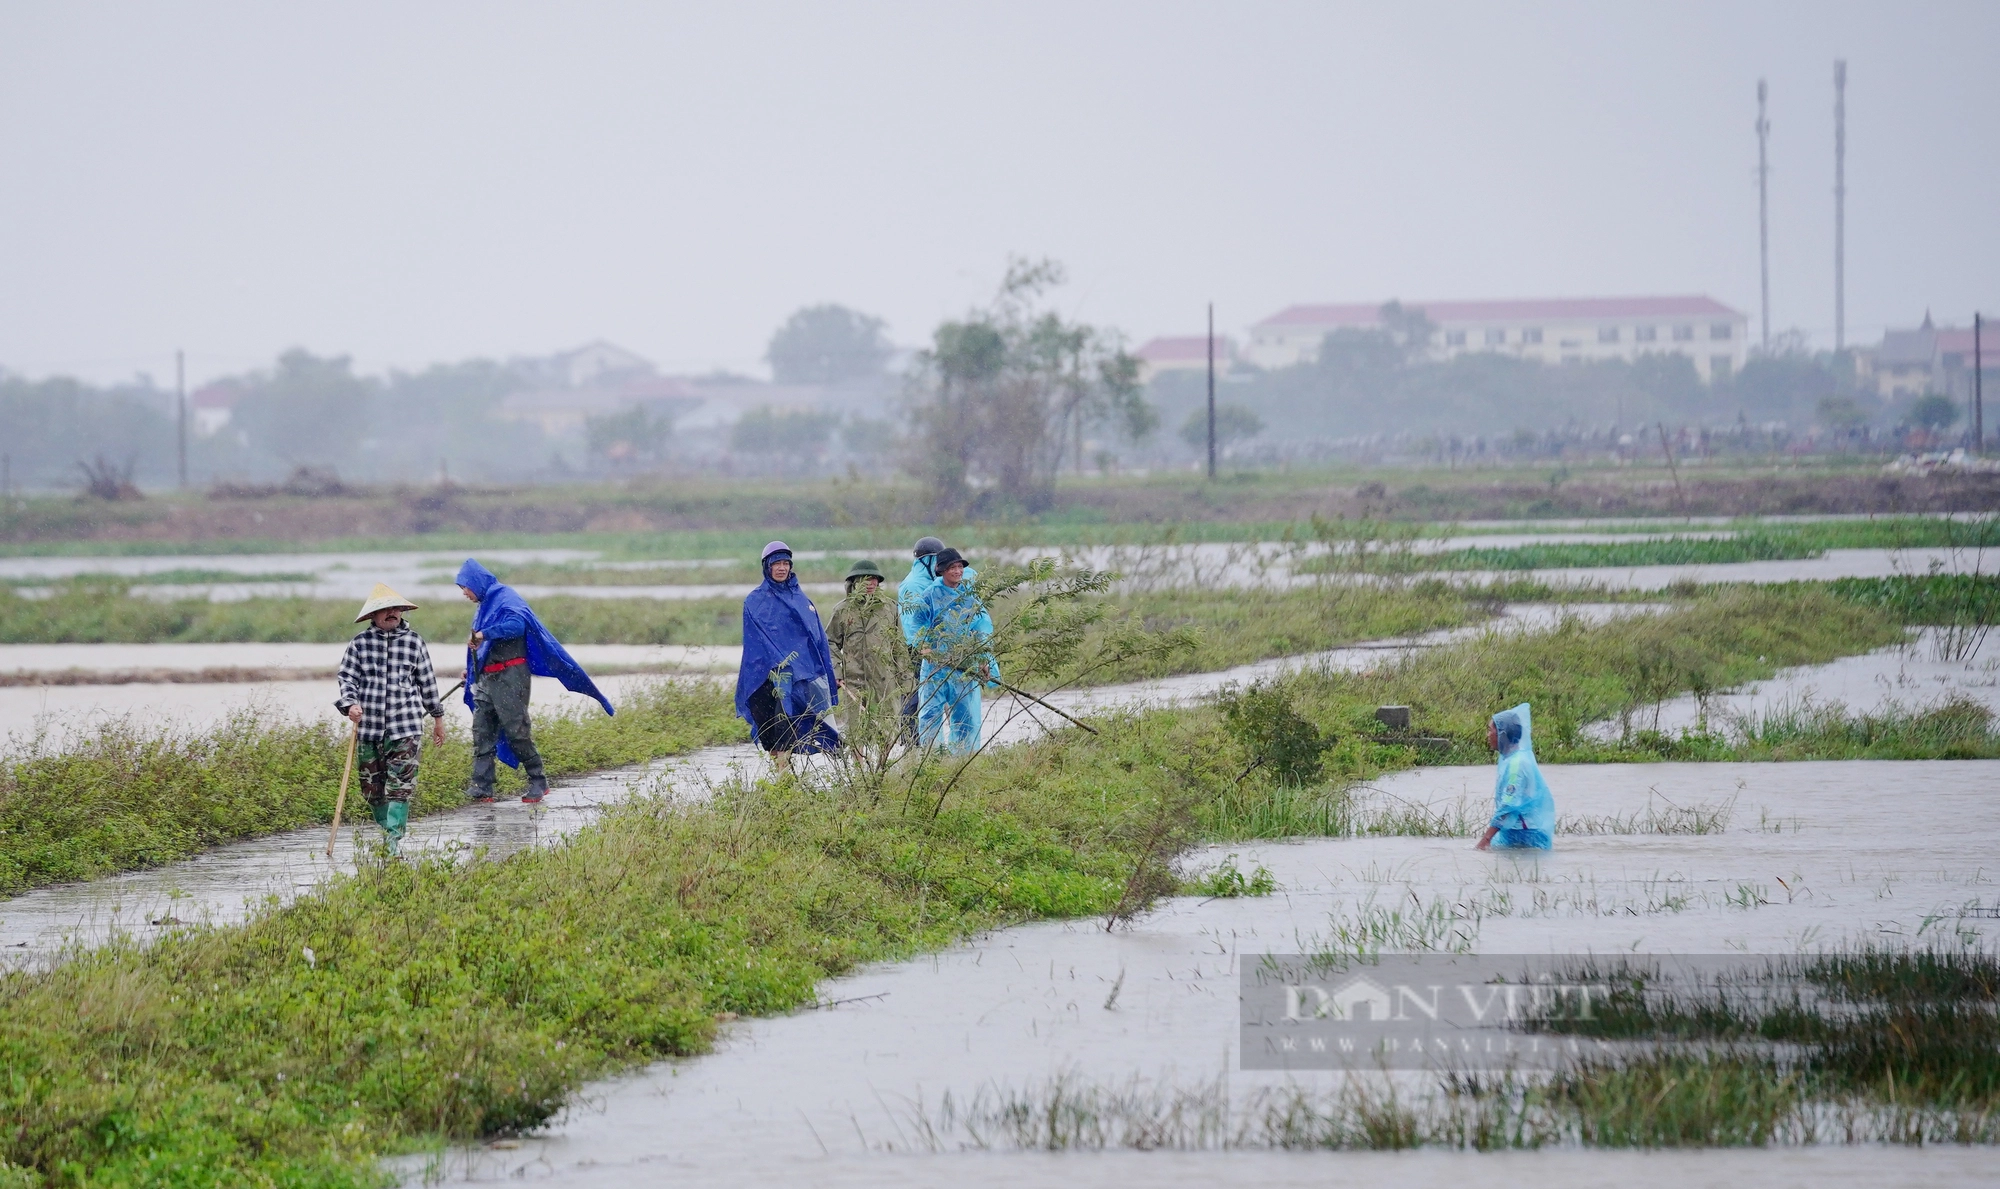 Cả làng ở Hà Tĩnh “đội mưa” cùng nhau lội nước đi bắt chuột bảo vệ mùa màng - Ảnh 3.